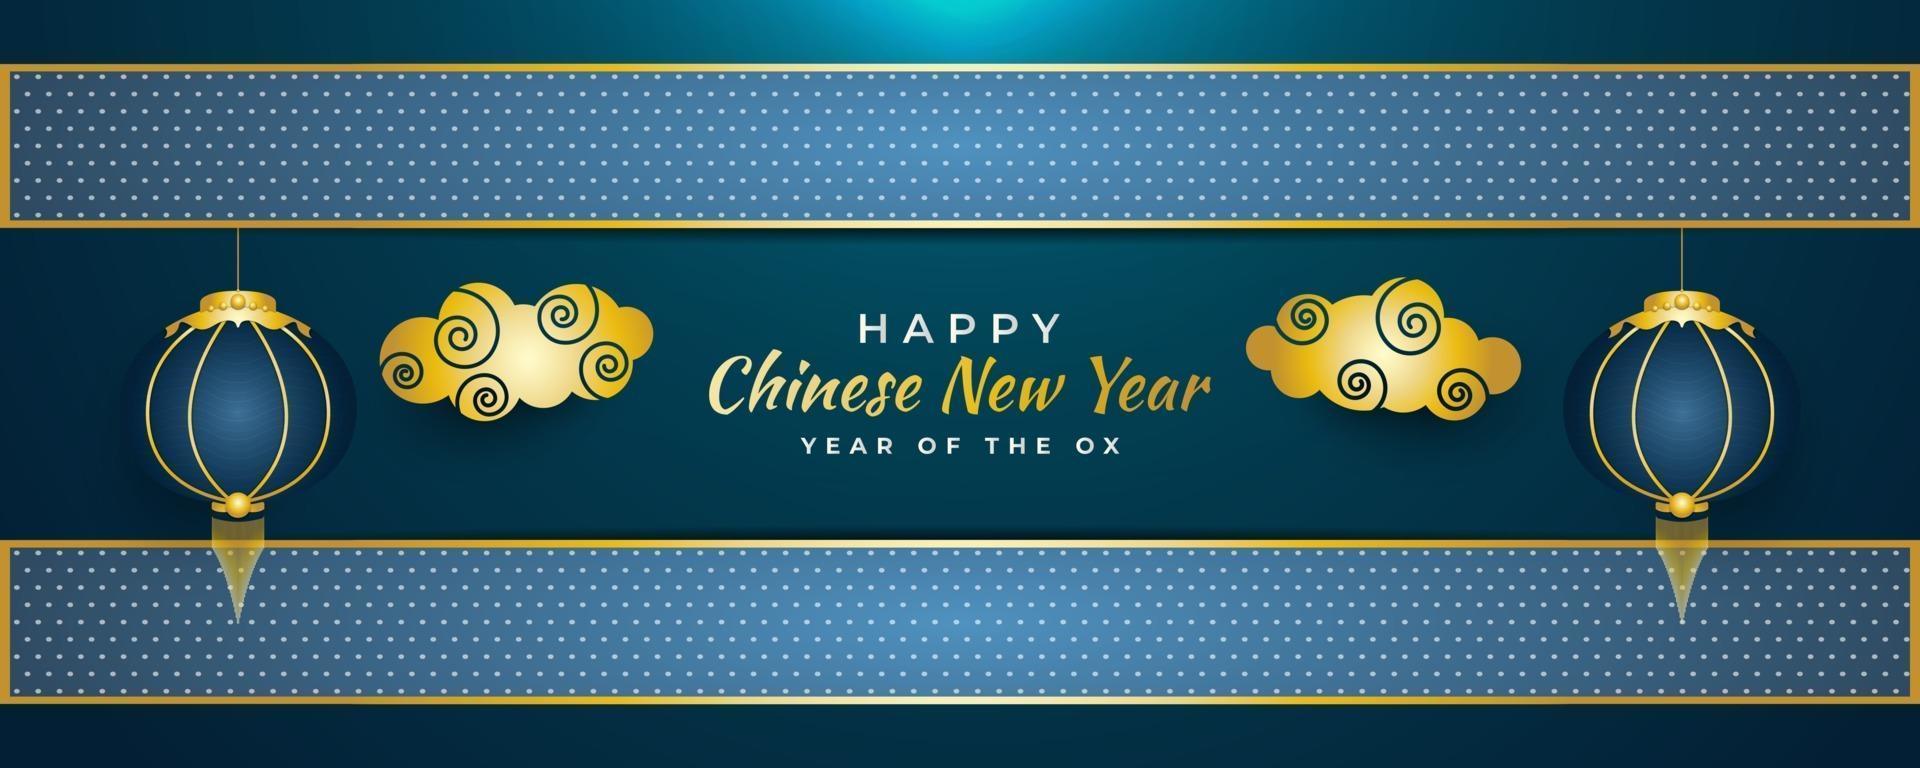 chinesisches Neujahrsgrußbanner mit goldenen Wolken und blauen Laternen auf blauem abstraktem Hintergrund vektor